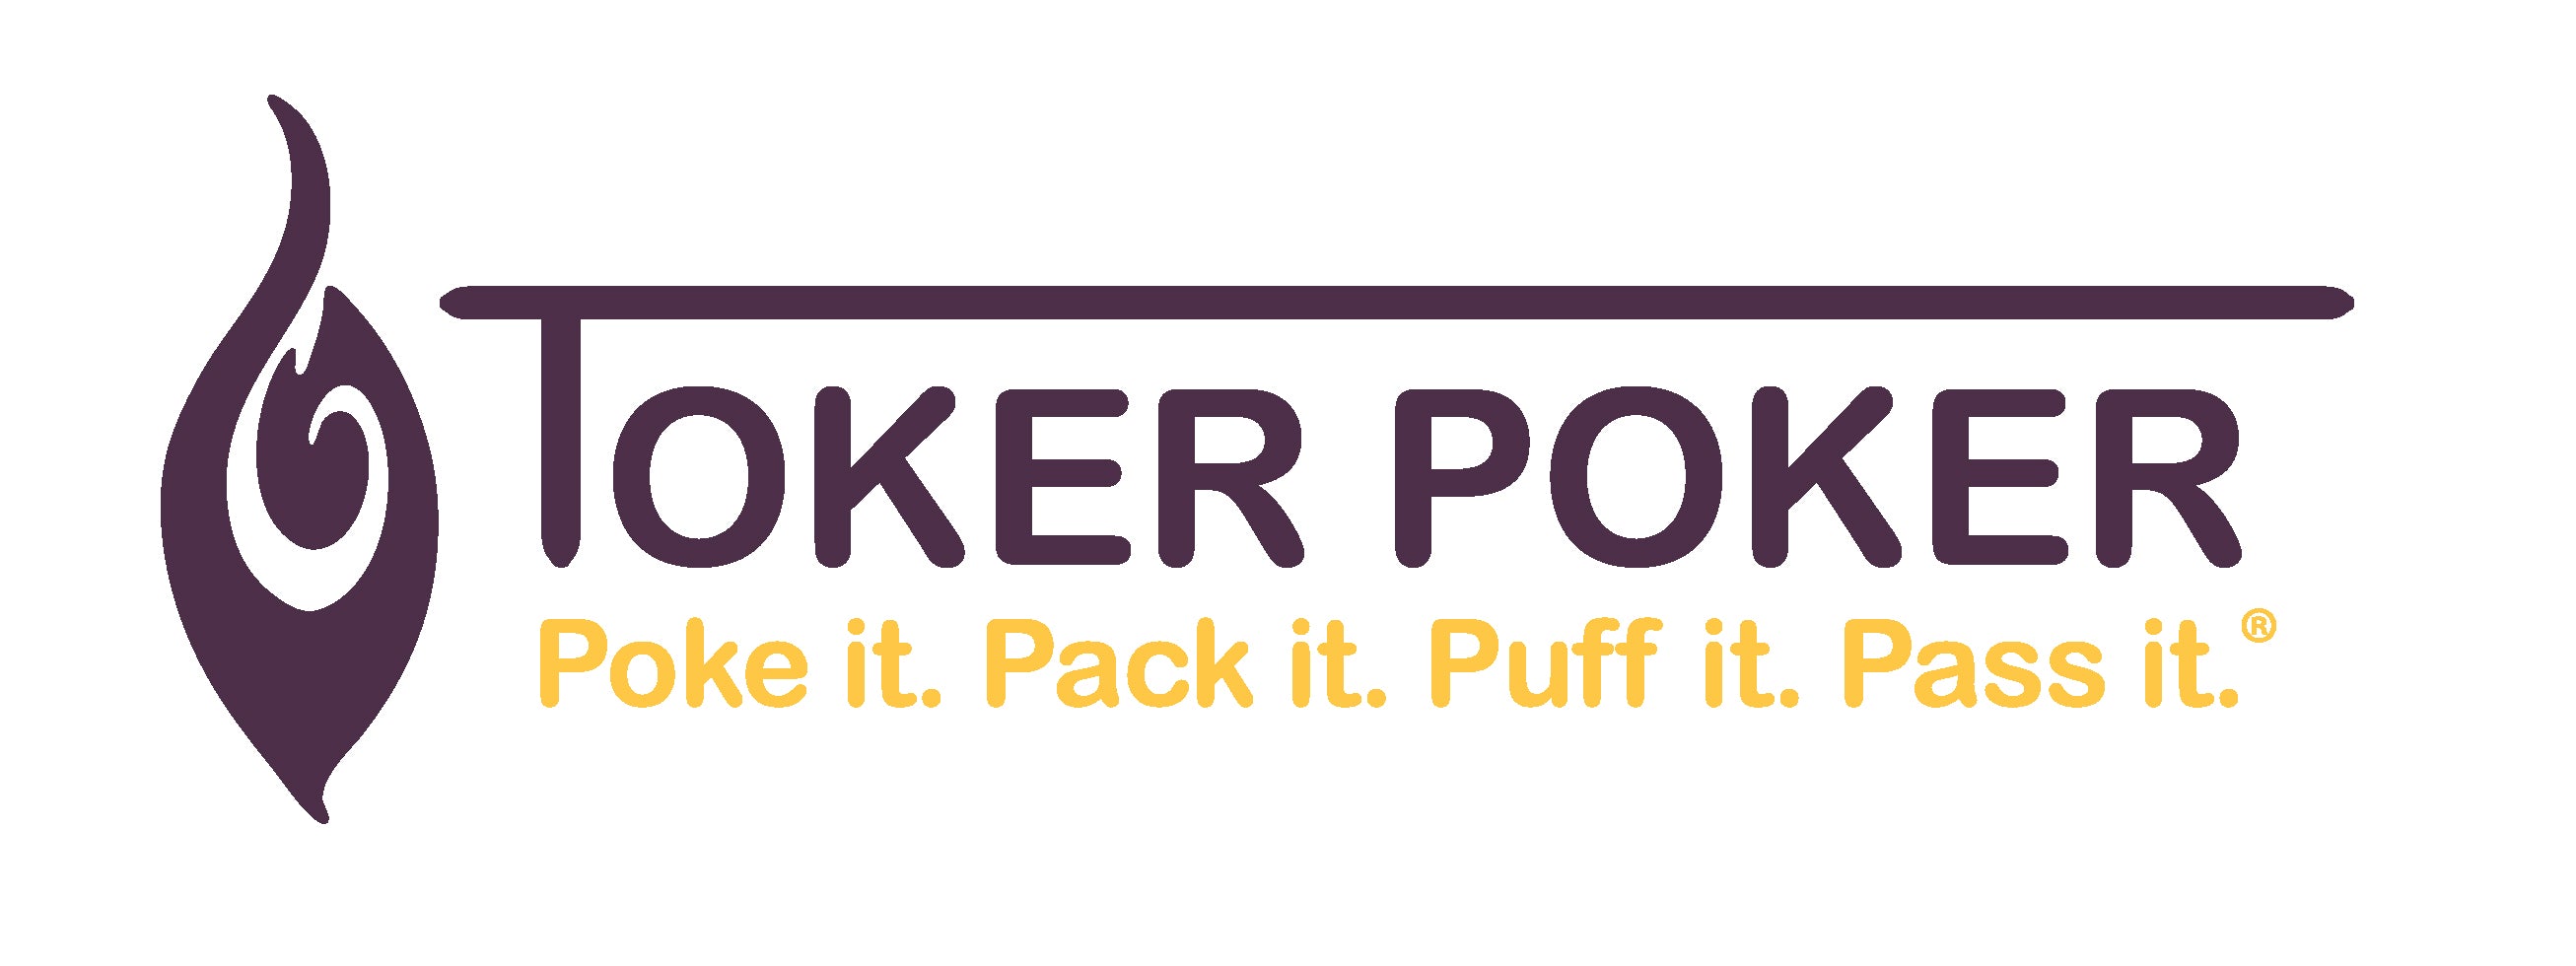 Toker Poker - The Original Lighter Sleeve Poker - Hemp Plastic –  EastWestNovelty